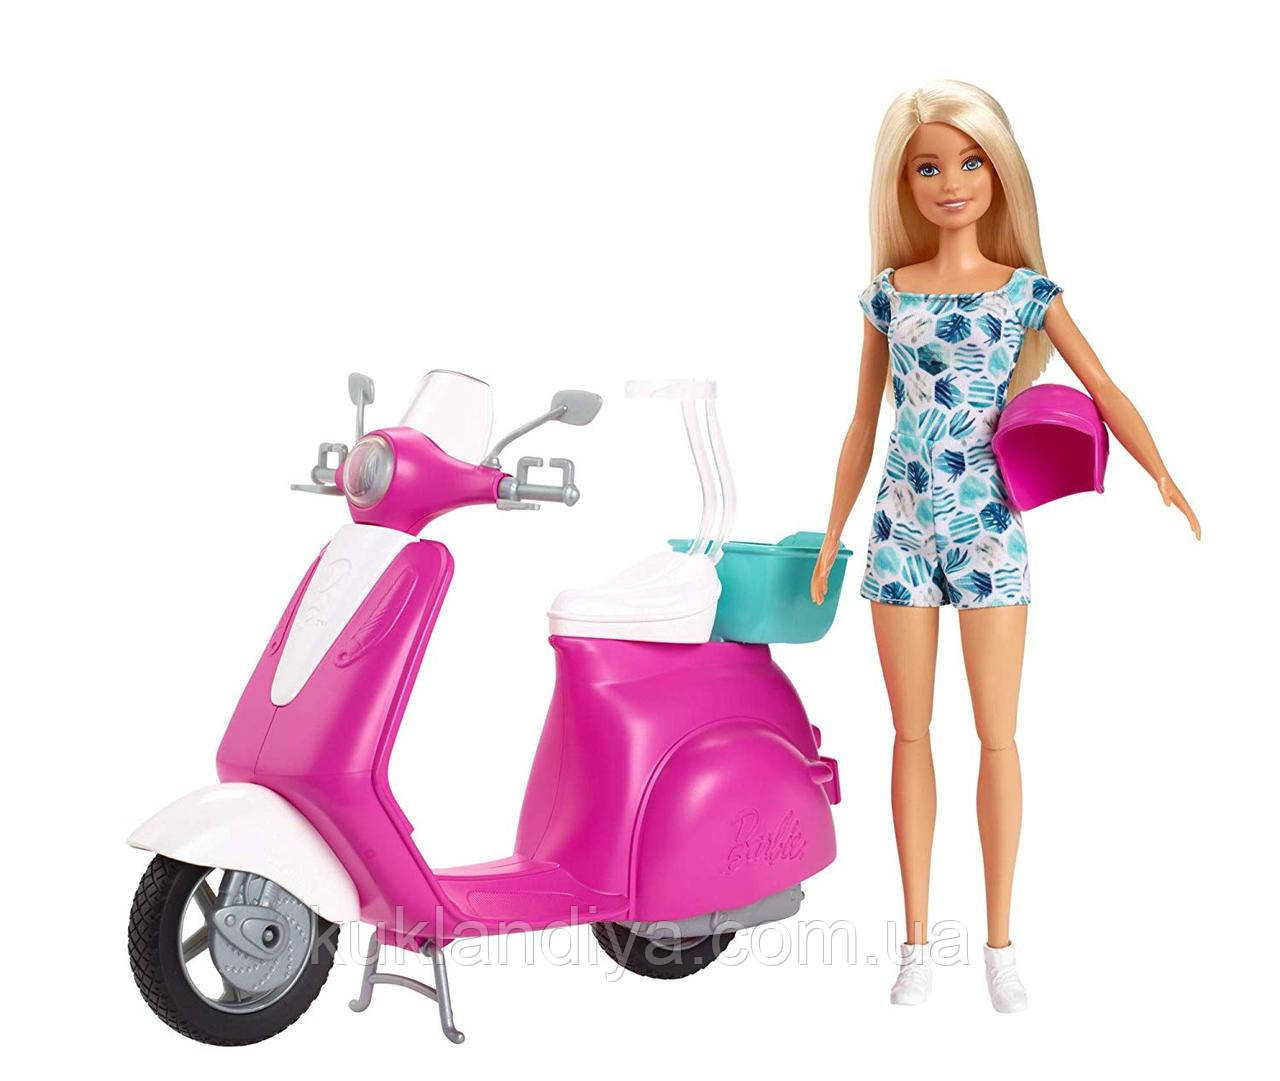 Барбі на скутері — Barbie Scooter